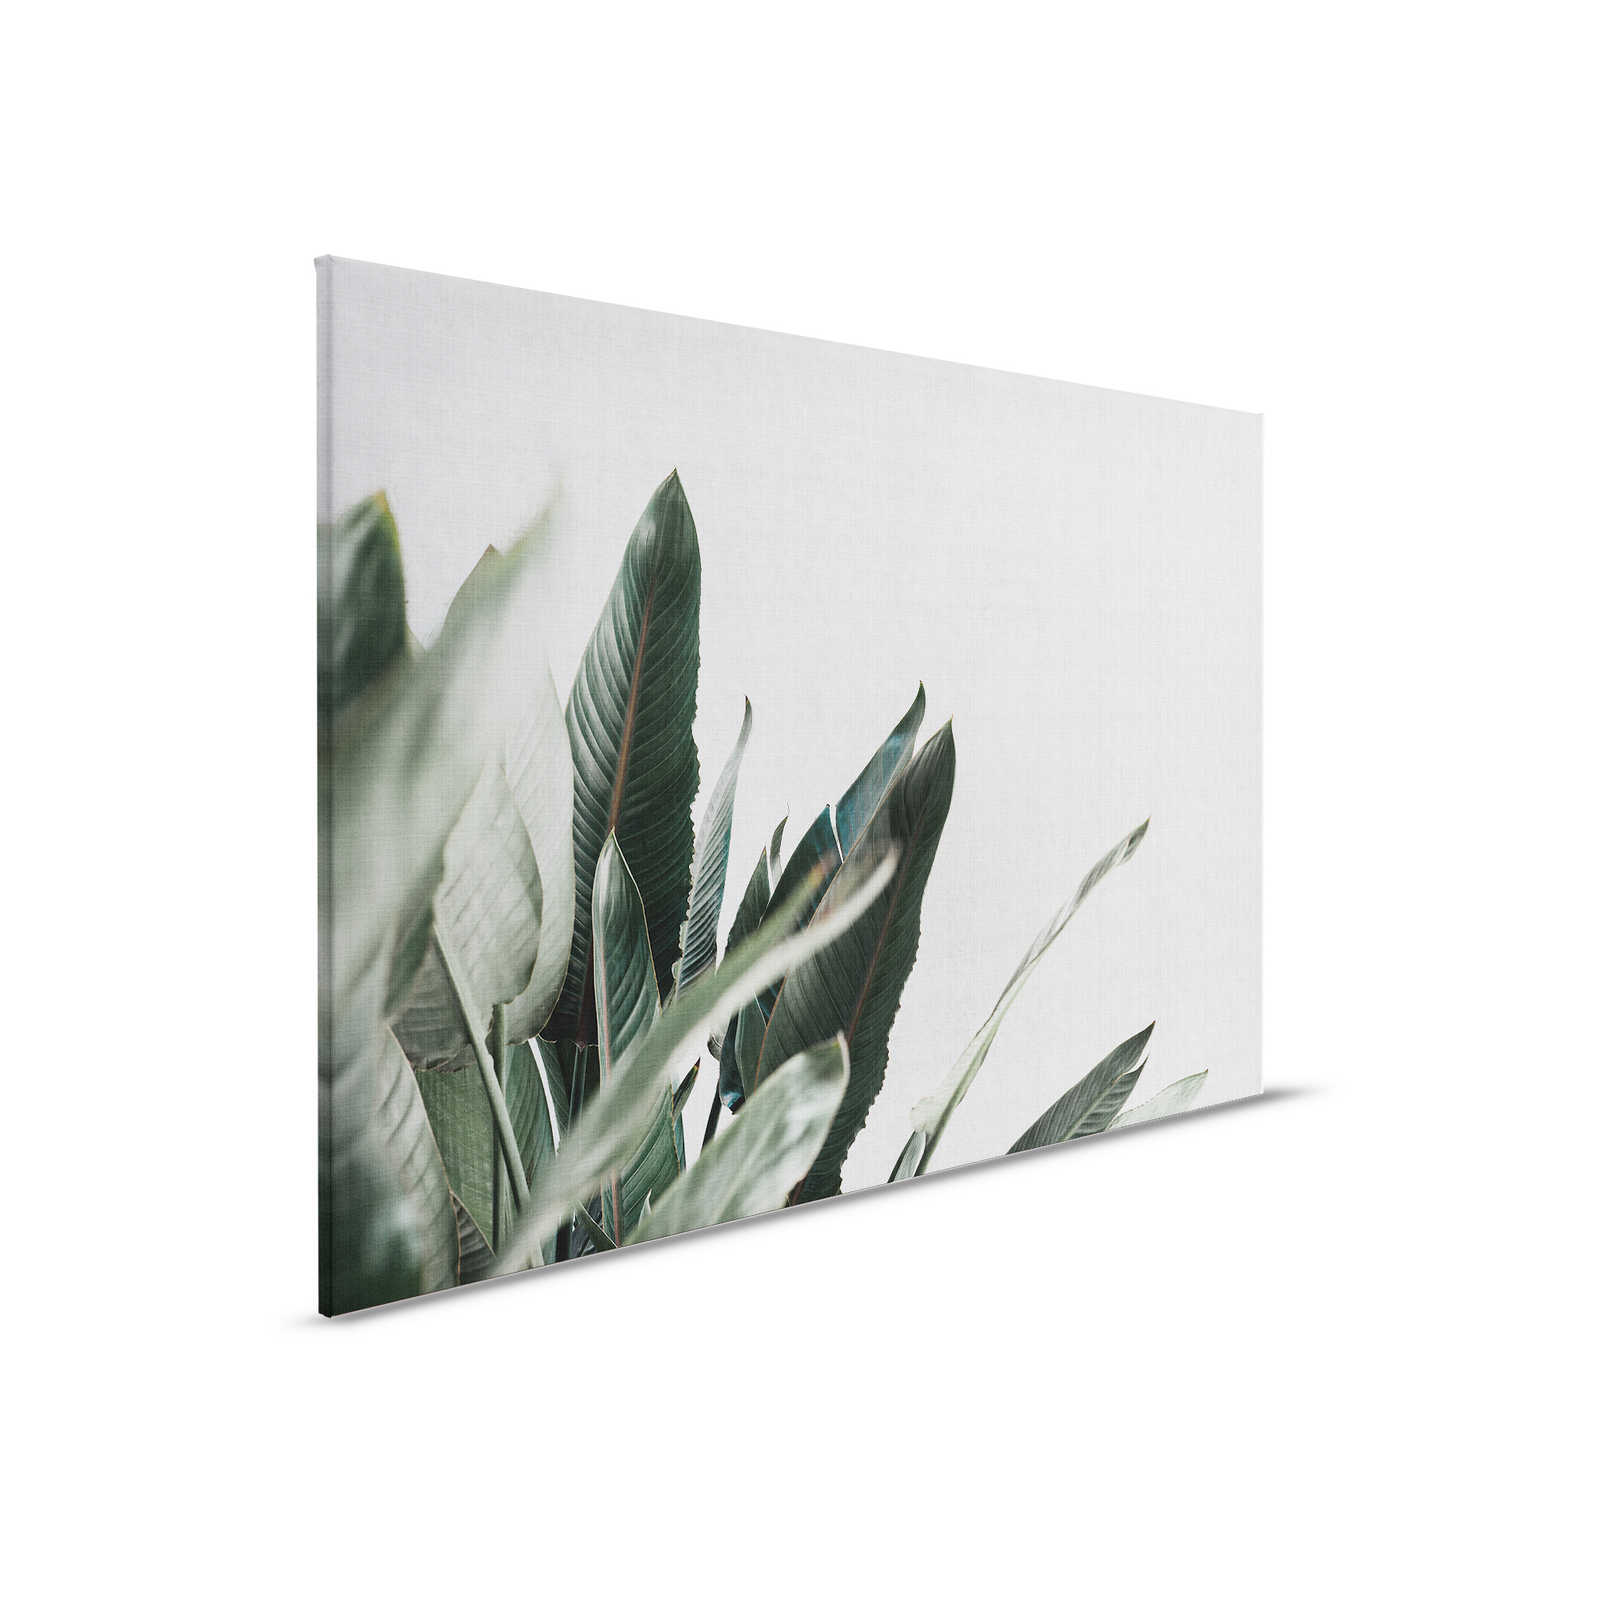 Urban jungle 1 - Tableau toile avec feuilles de palmier en lin naturel - 0,90 m x 0,60 m
